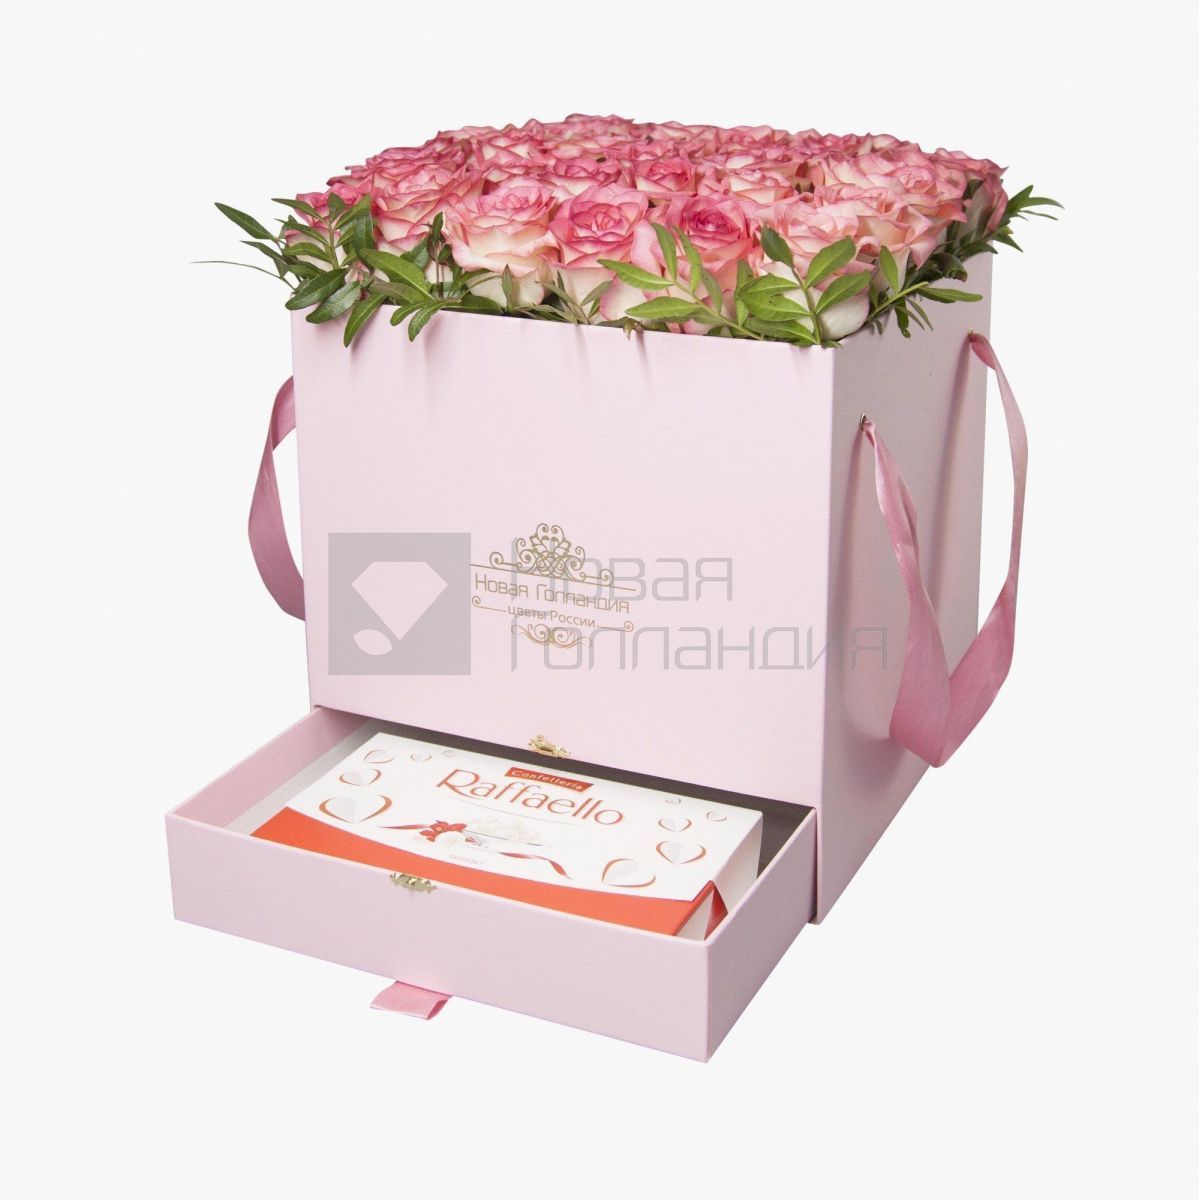 35 розовых роз в большой розовой коробке шкатулке с макарунсами №500